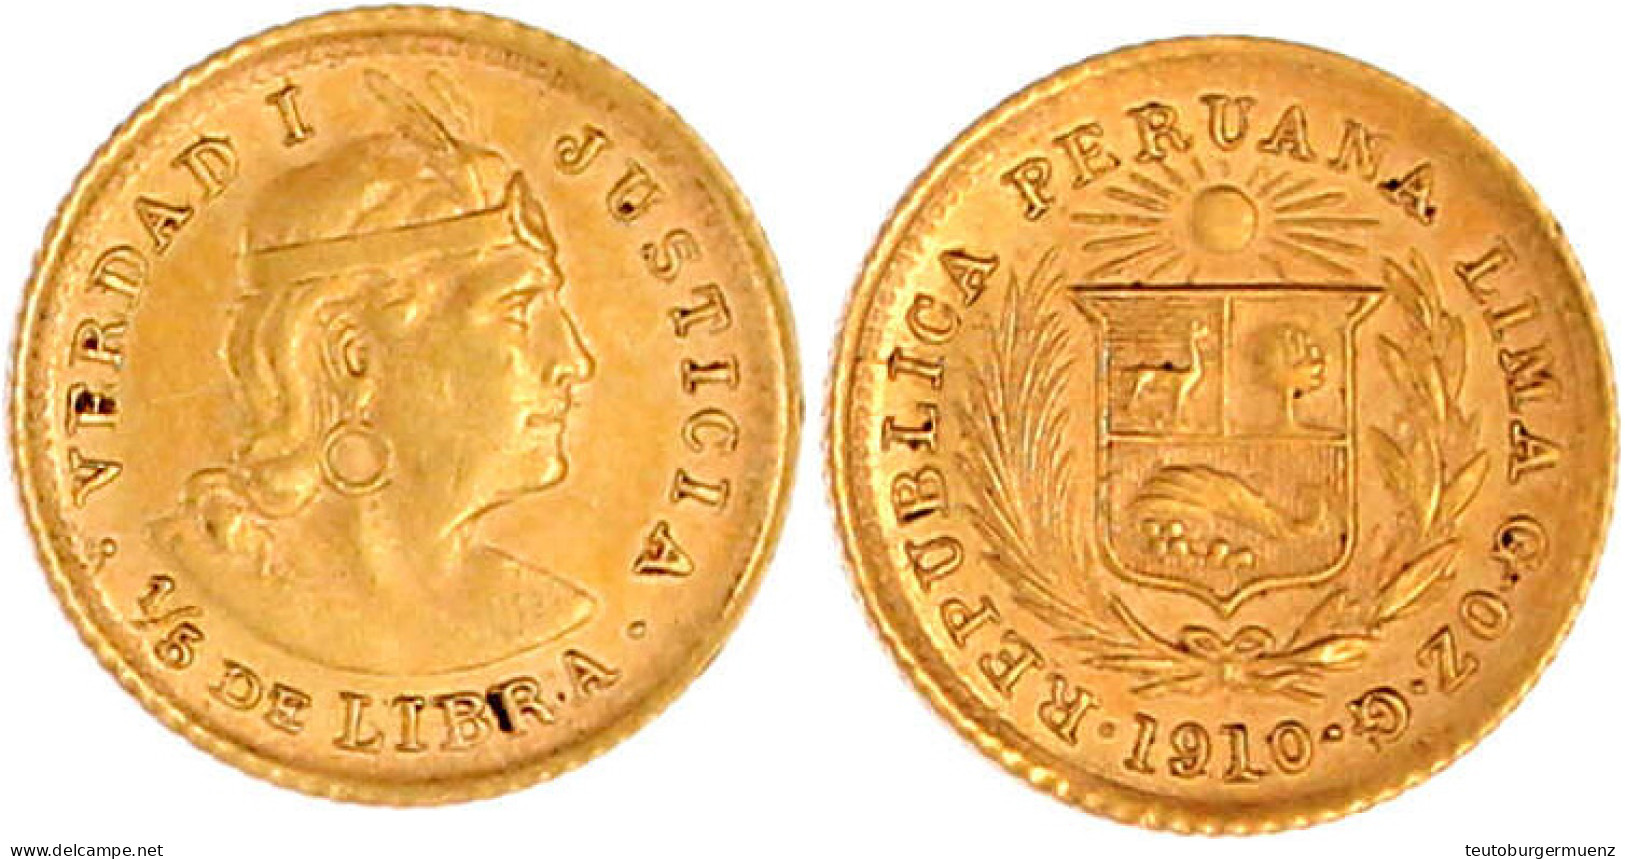 1/5 Libra (1/5 Pound) 1910. 1,60 G. 917/1000. Vorzüglich, Winz. Randfehler. Krause/Mishler 210. - Peru